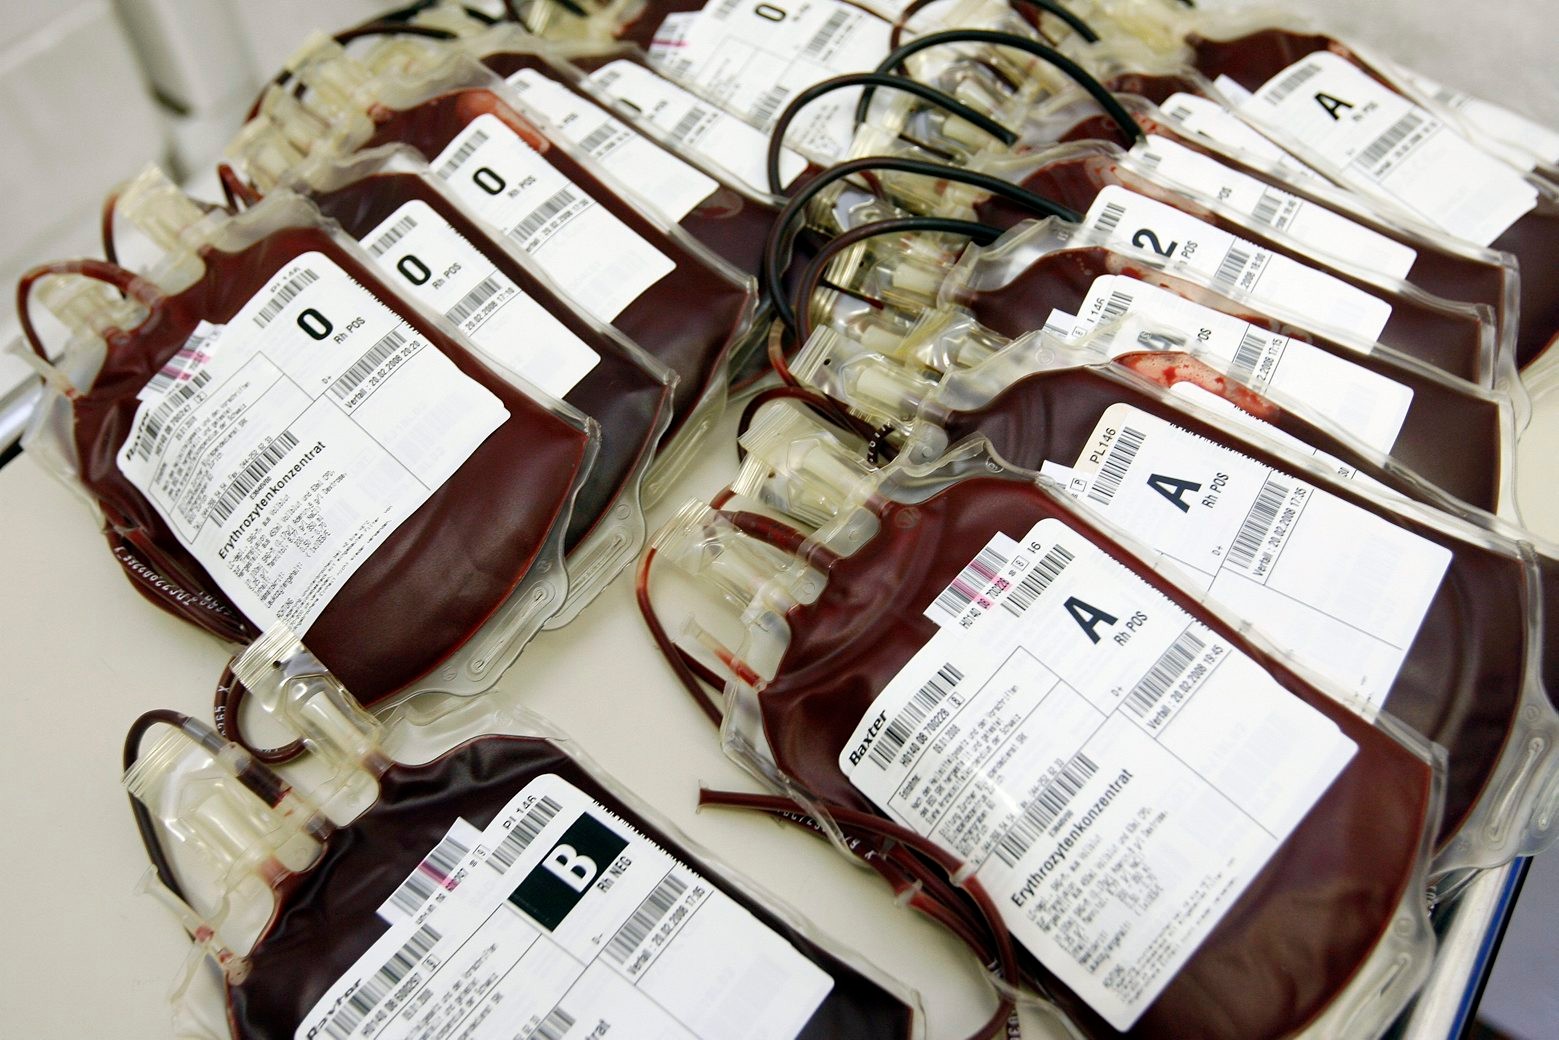 ZUM BLUTSPENDE-STREIT ZWISCHEN DEM ROTEN KREUZ UND BLUTSPENDE ZUERICH STELLEN WIR IHNEN AM FREITAG, 11. DEZEMBER 2009 FOLGENDES ARCHIVBILD ZUR VERFUEGUNG - Beutel mit frisch gespendetem Blut liegen am 11. Januar 2008 auf einem Tisch beim Blutspendedienst des Schweizerischen Roten Kreuzes SRK in Zuerich. (KEYSTONE/Alessandro Della Bella)



 SCHWEIZ BLUT BLUTSPENDE ZUERICH